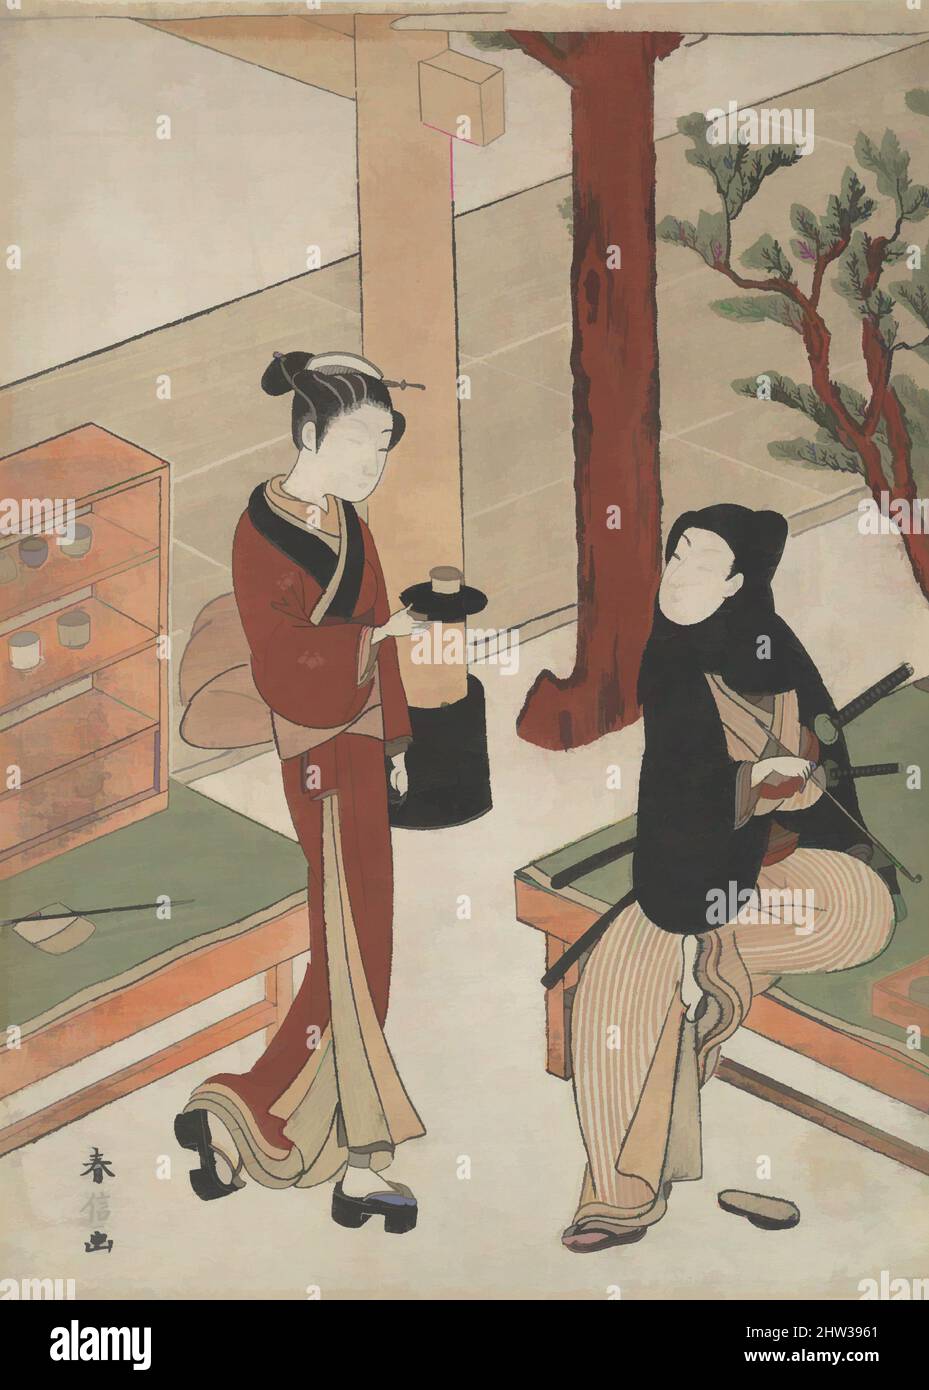 Art inspiré par Osen attendant un jeune Samurai, période Edo (1615–1868), env. 1770, Japon, imprimé polychrome sur bois ; encre et couleur sur papier, 10 3/4 x 7 7/8 po. (27,3 x 20 cm), Prints, Suzuki Harunobu (japonais, 1725–1770), la crête familiale de paulownia sur son kimono et partiellement, les œuvres classiques modernisées par Artotop avec un peu de modernité. Formes, couleur et valeur, impact visuel accrocheur sur l'art émotions par la liberté d'œuvres d'art d'une manière contemporaine. Un message intemporel qui cherche une nouvelle direction créative. Artistes qui se tournent vers le support numérique et créent le NFT Artotop Banque D'Images